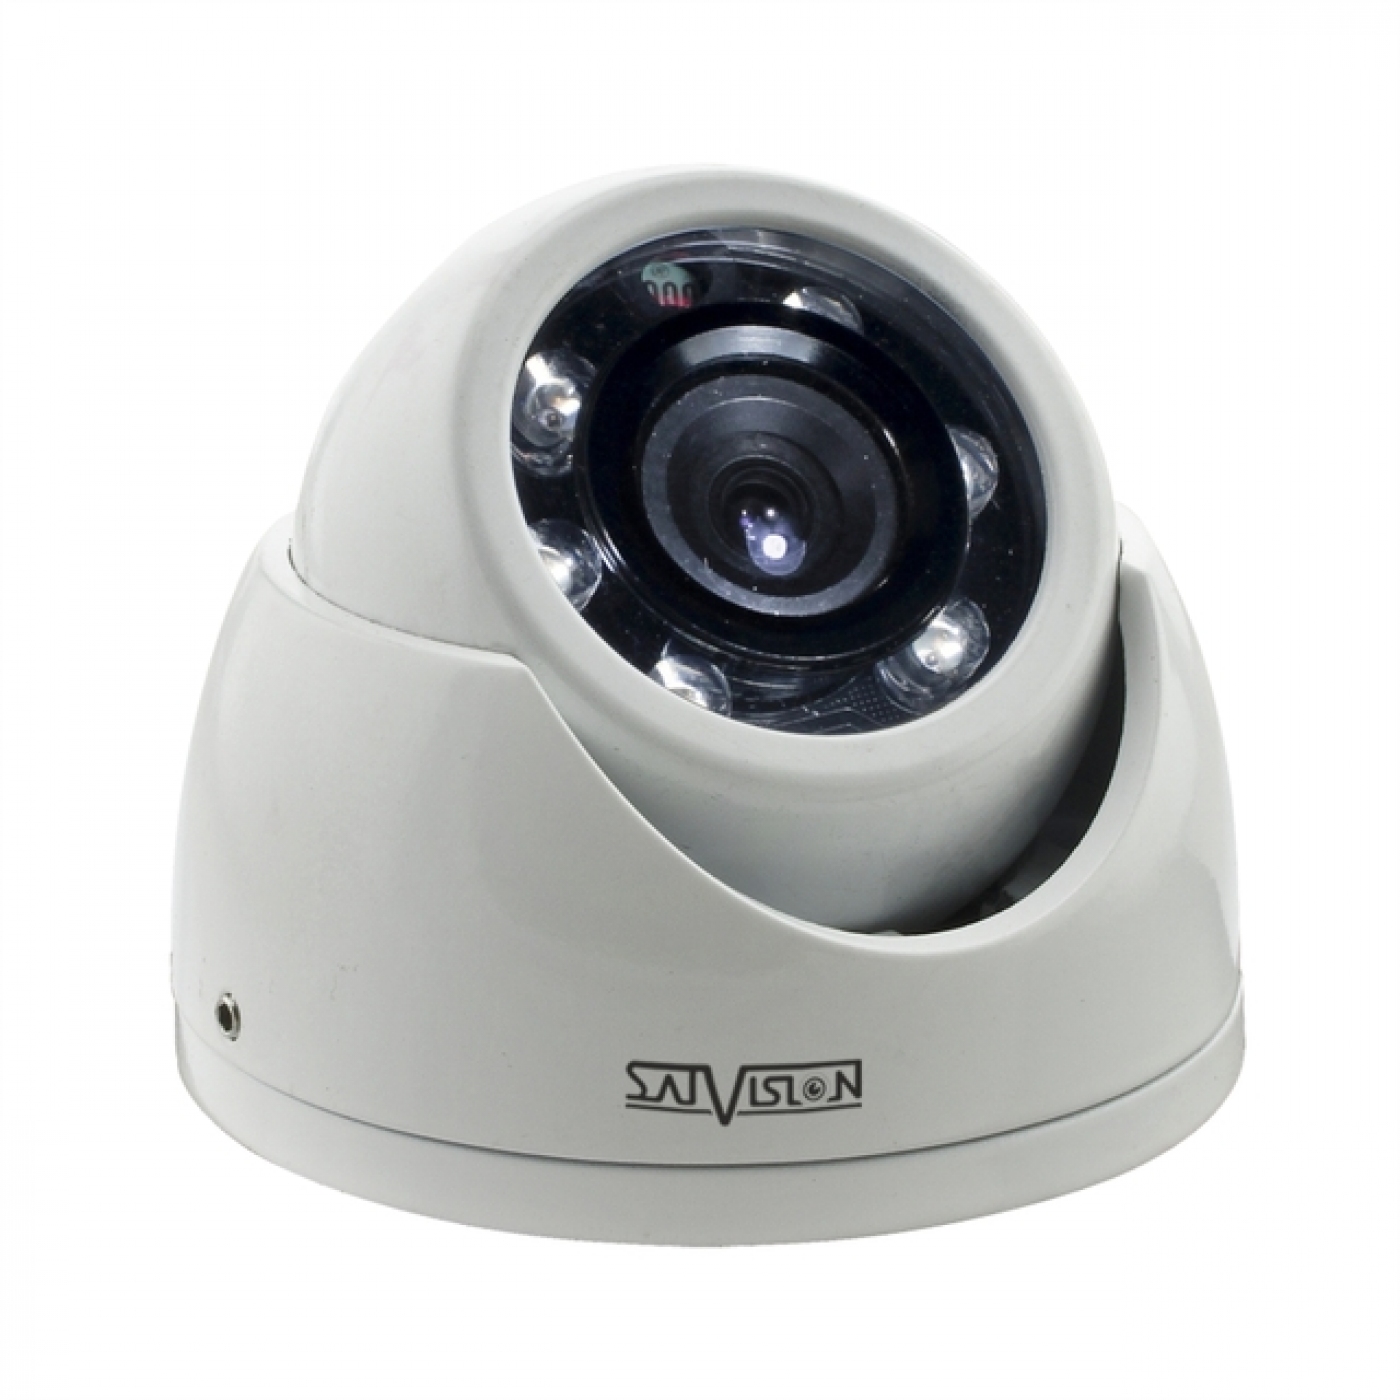 SVC-D792 (3,6) - Видеокамера SATVISION купольная